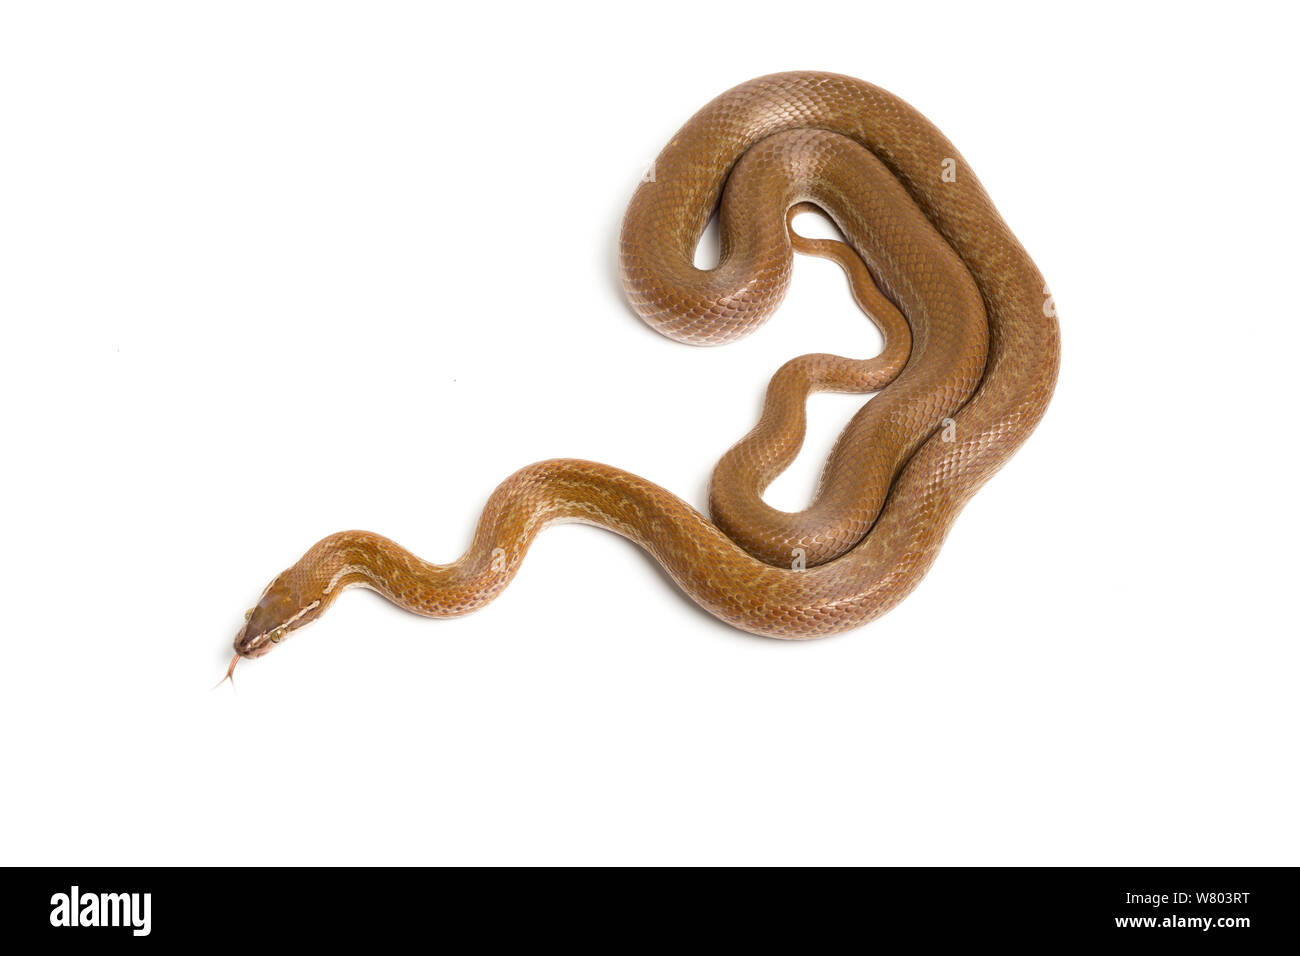 Cape House snake (Boaedon capensis) sobre fondo blanco. En cautiverio, se produce en Sudáfrica. Foto de stock